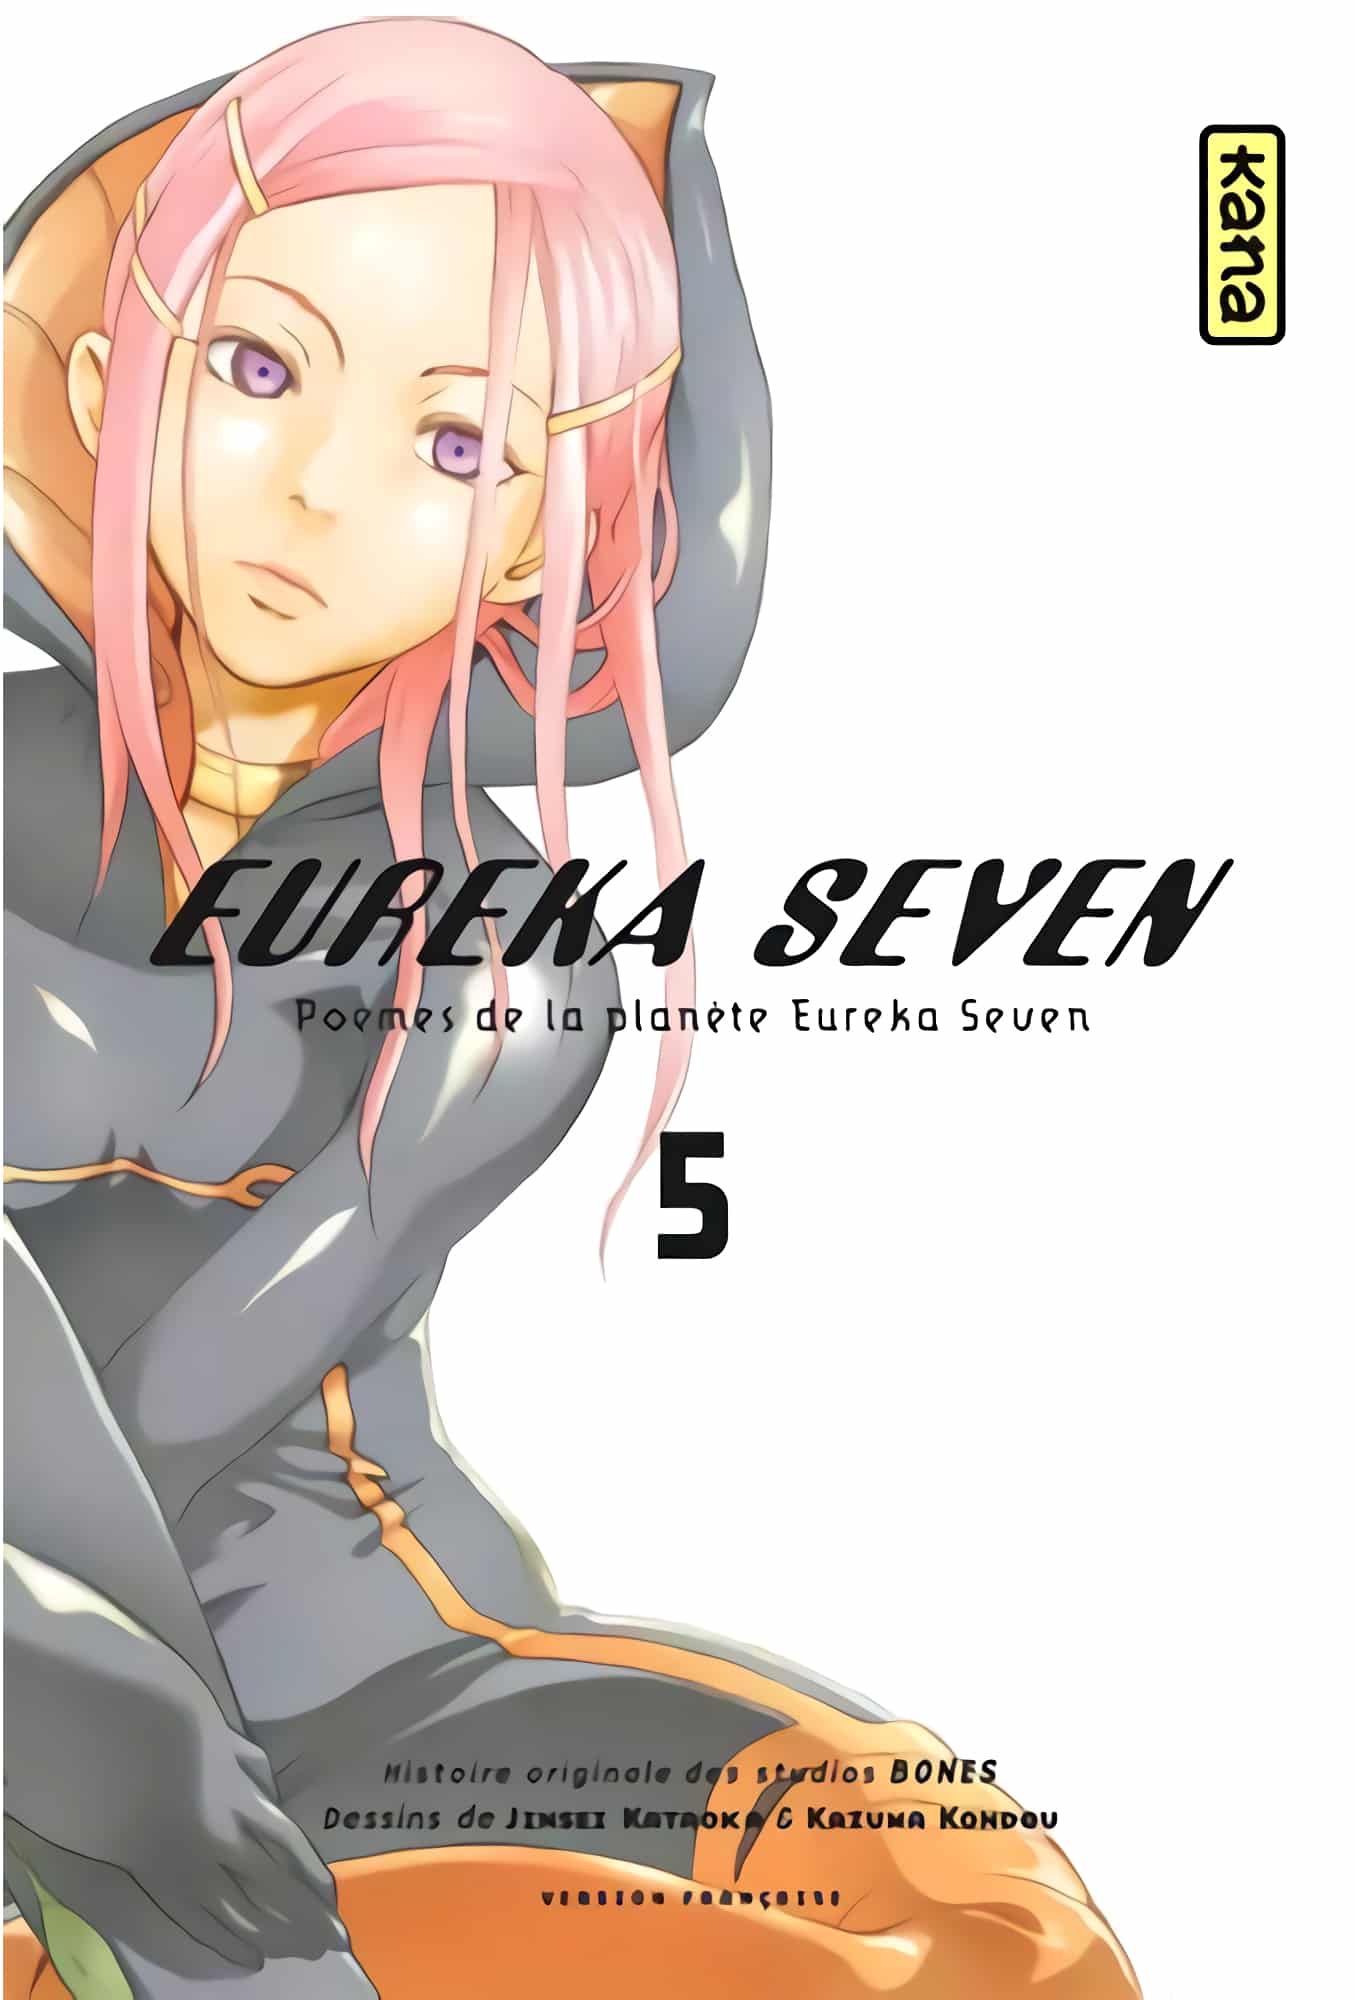 Tome 5 du manga Eureka Seven